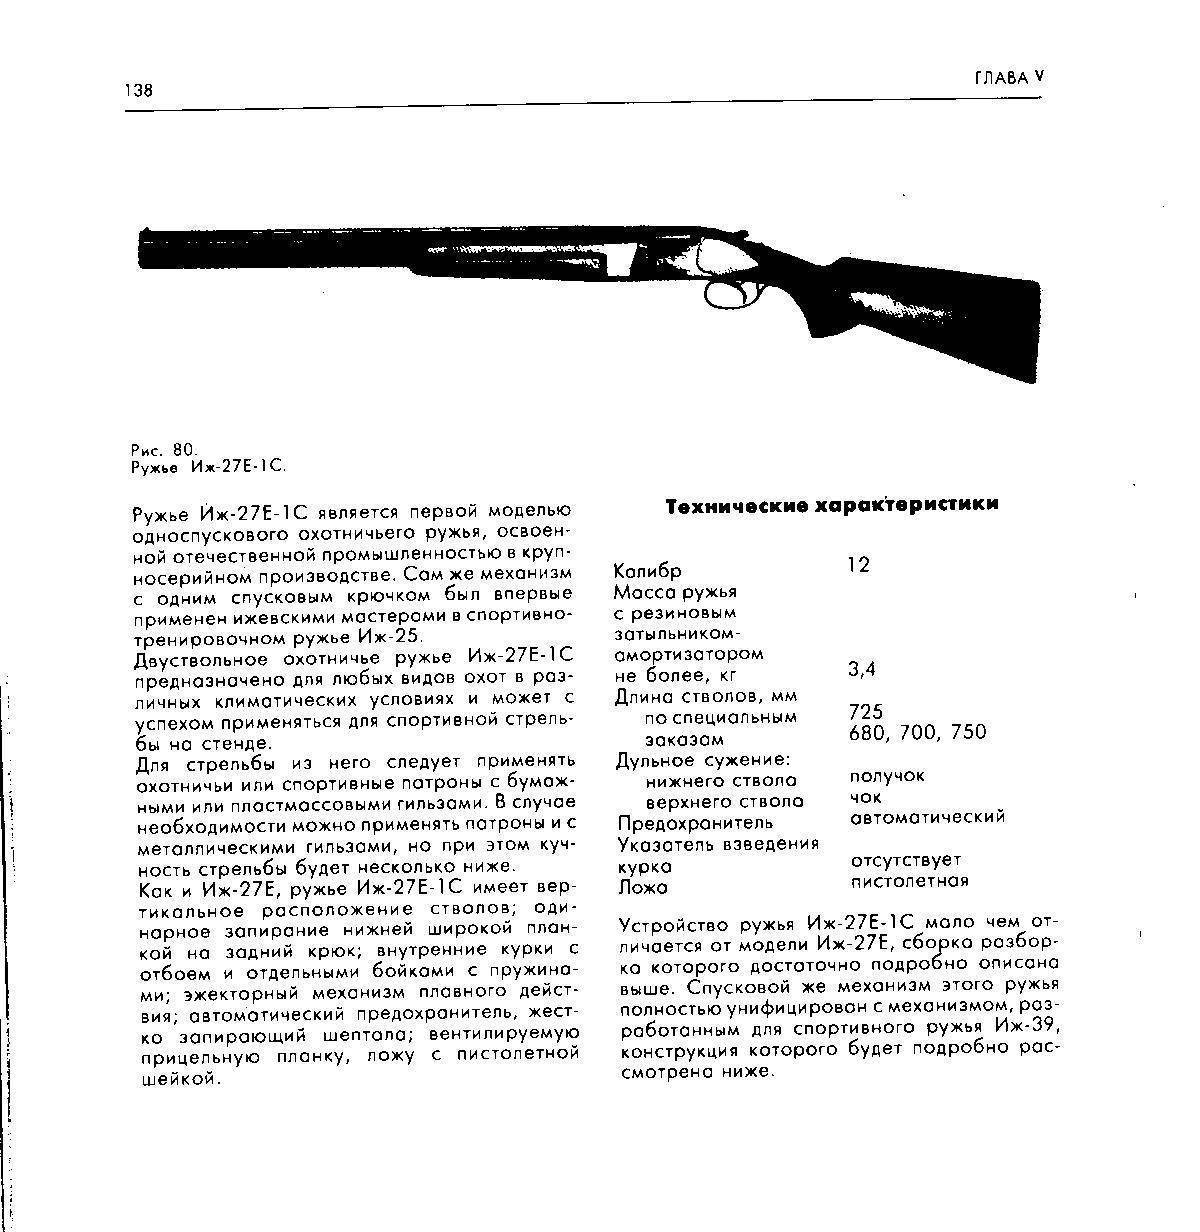 Обзор моделей ижевских охотничьих ружей: характеристики и сравнение